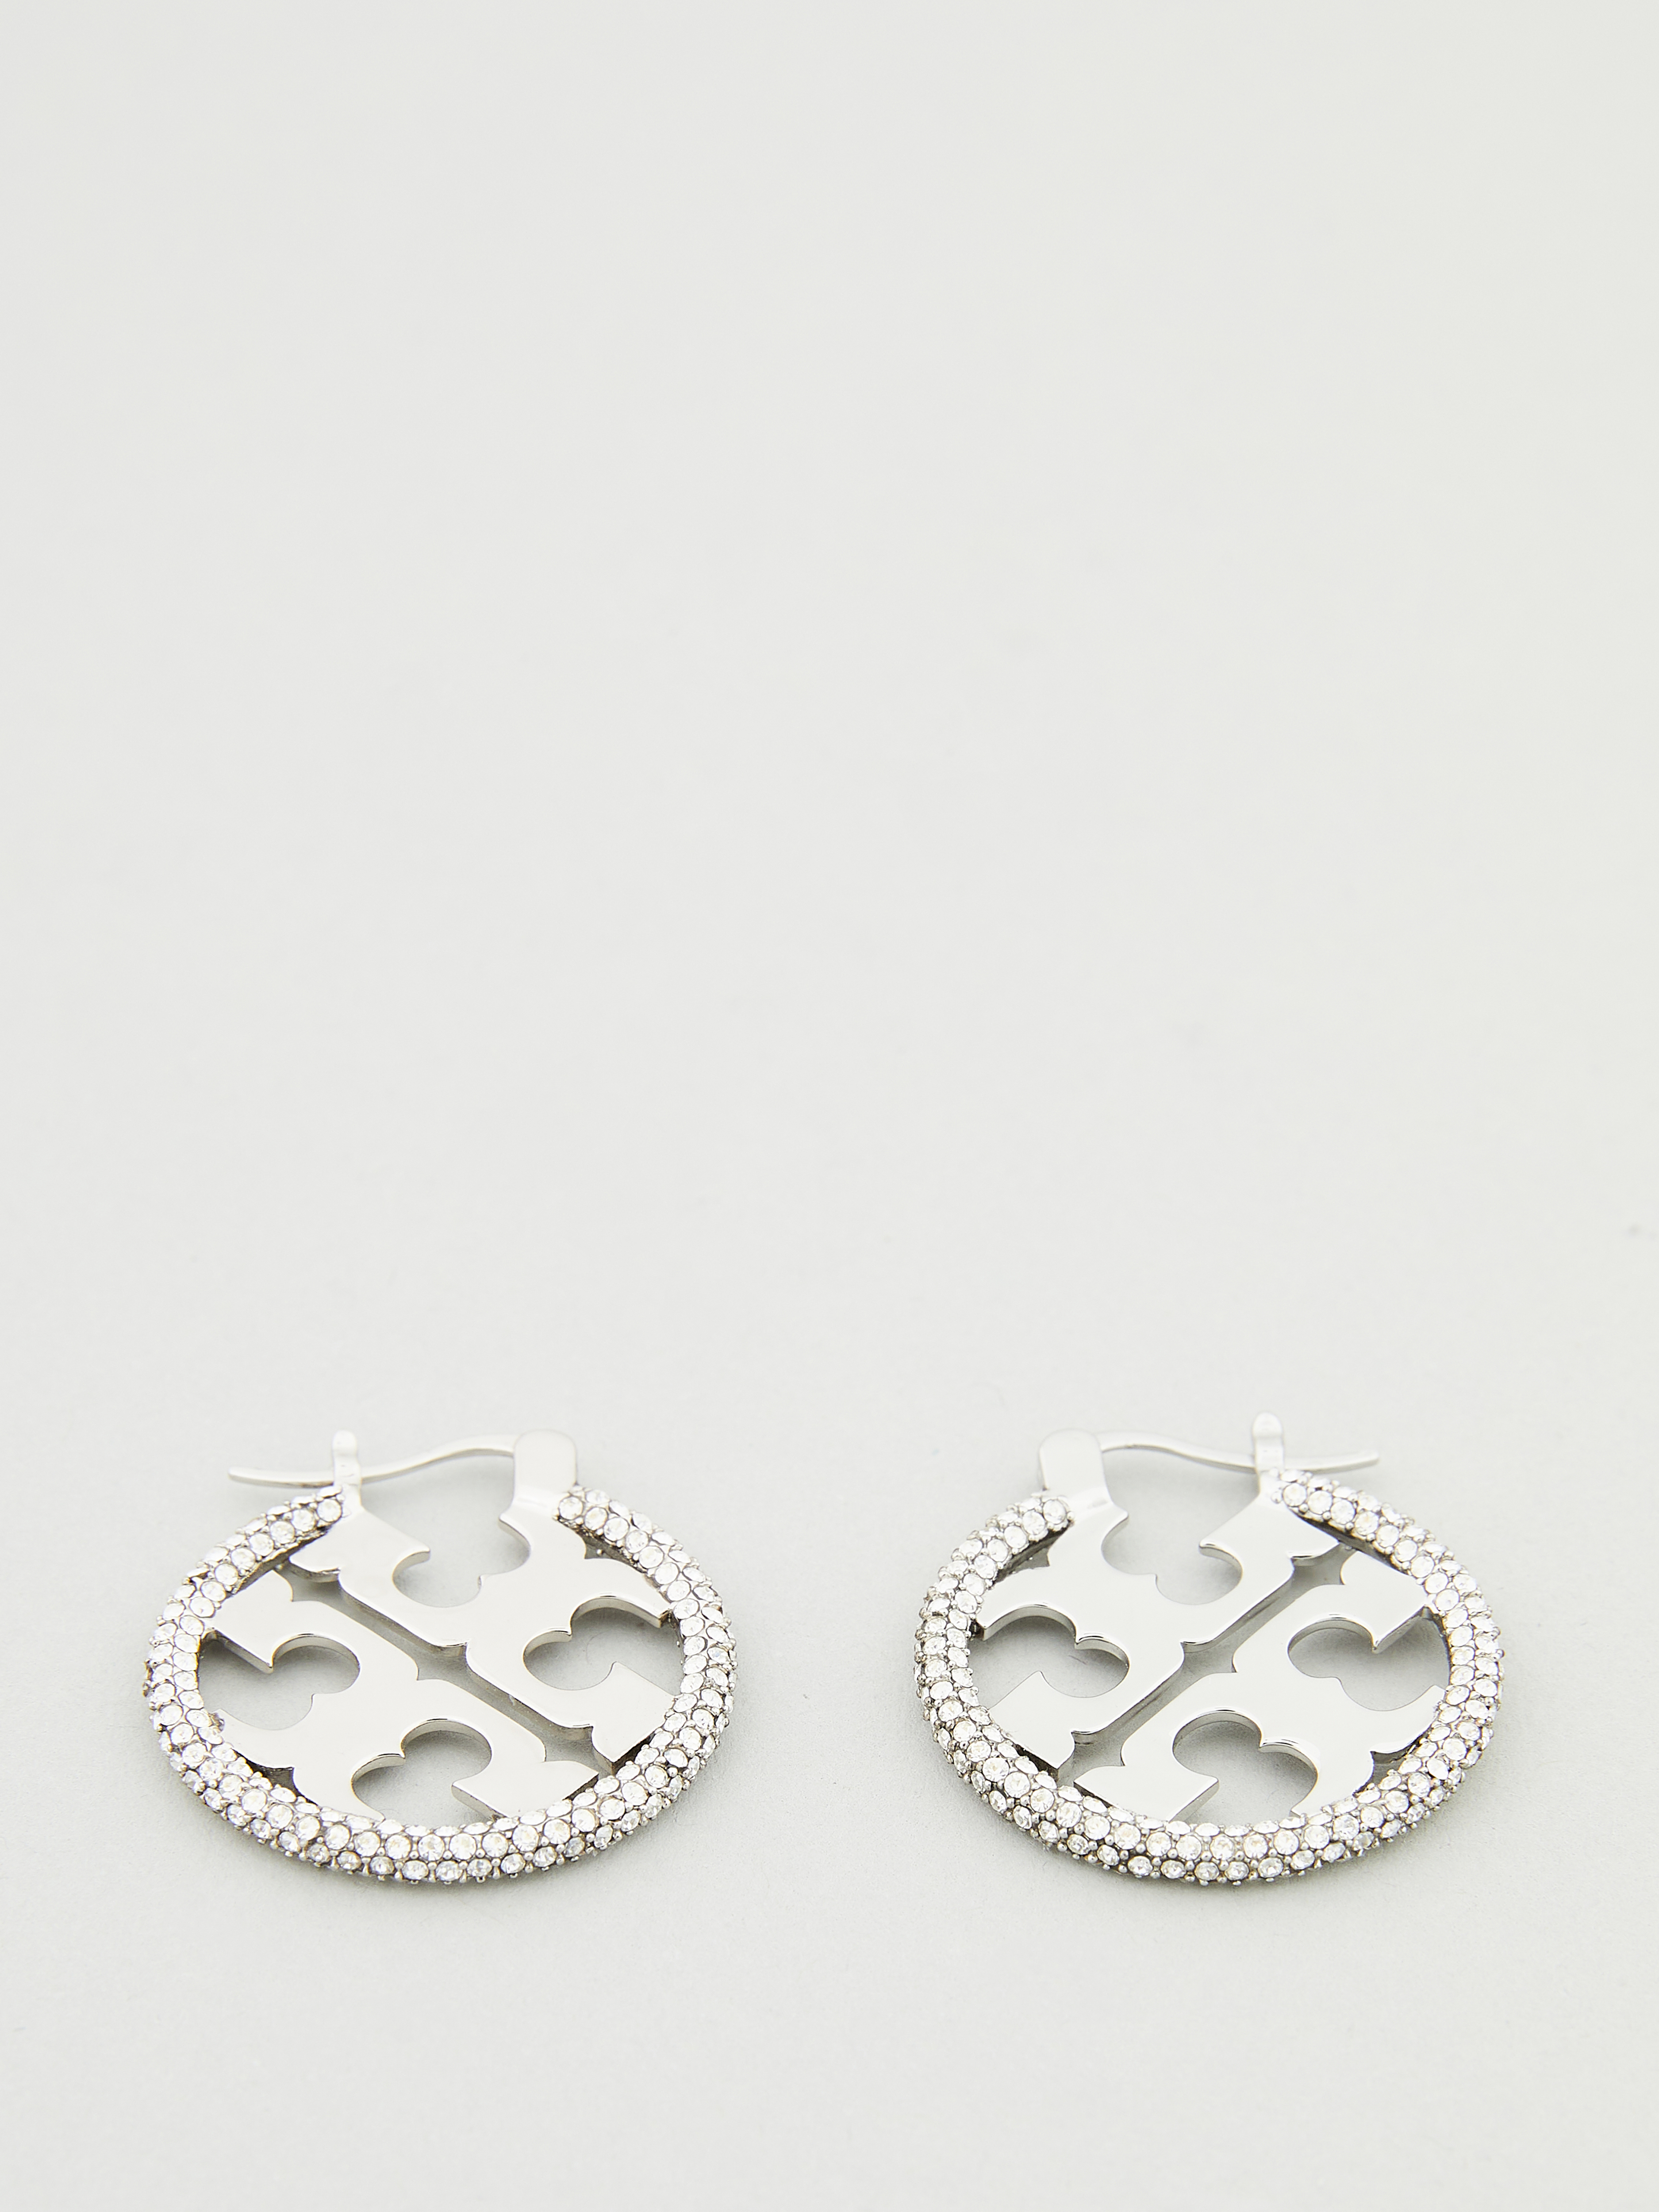 Tory Burch Earrings 'Miller' Silver | Earrings